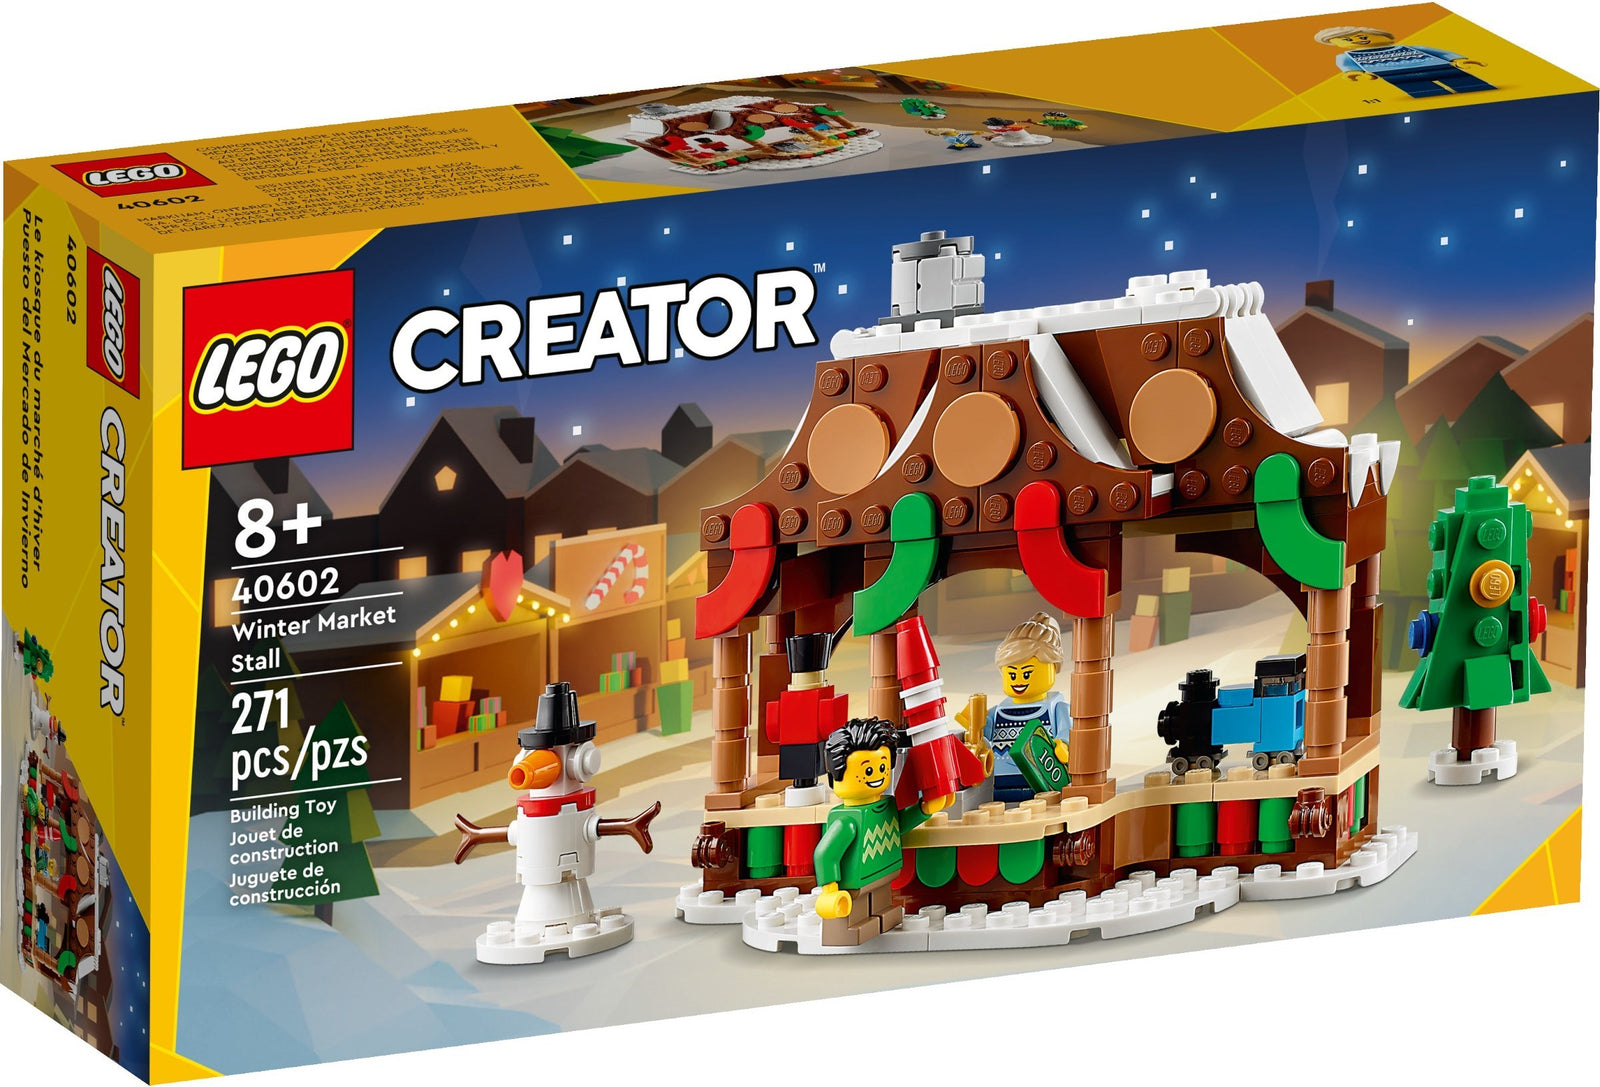 LEGO Weihnachten: Festlicher Bauspaß für die schönste Zeit des